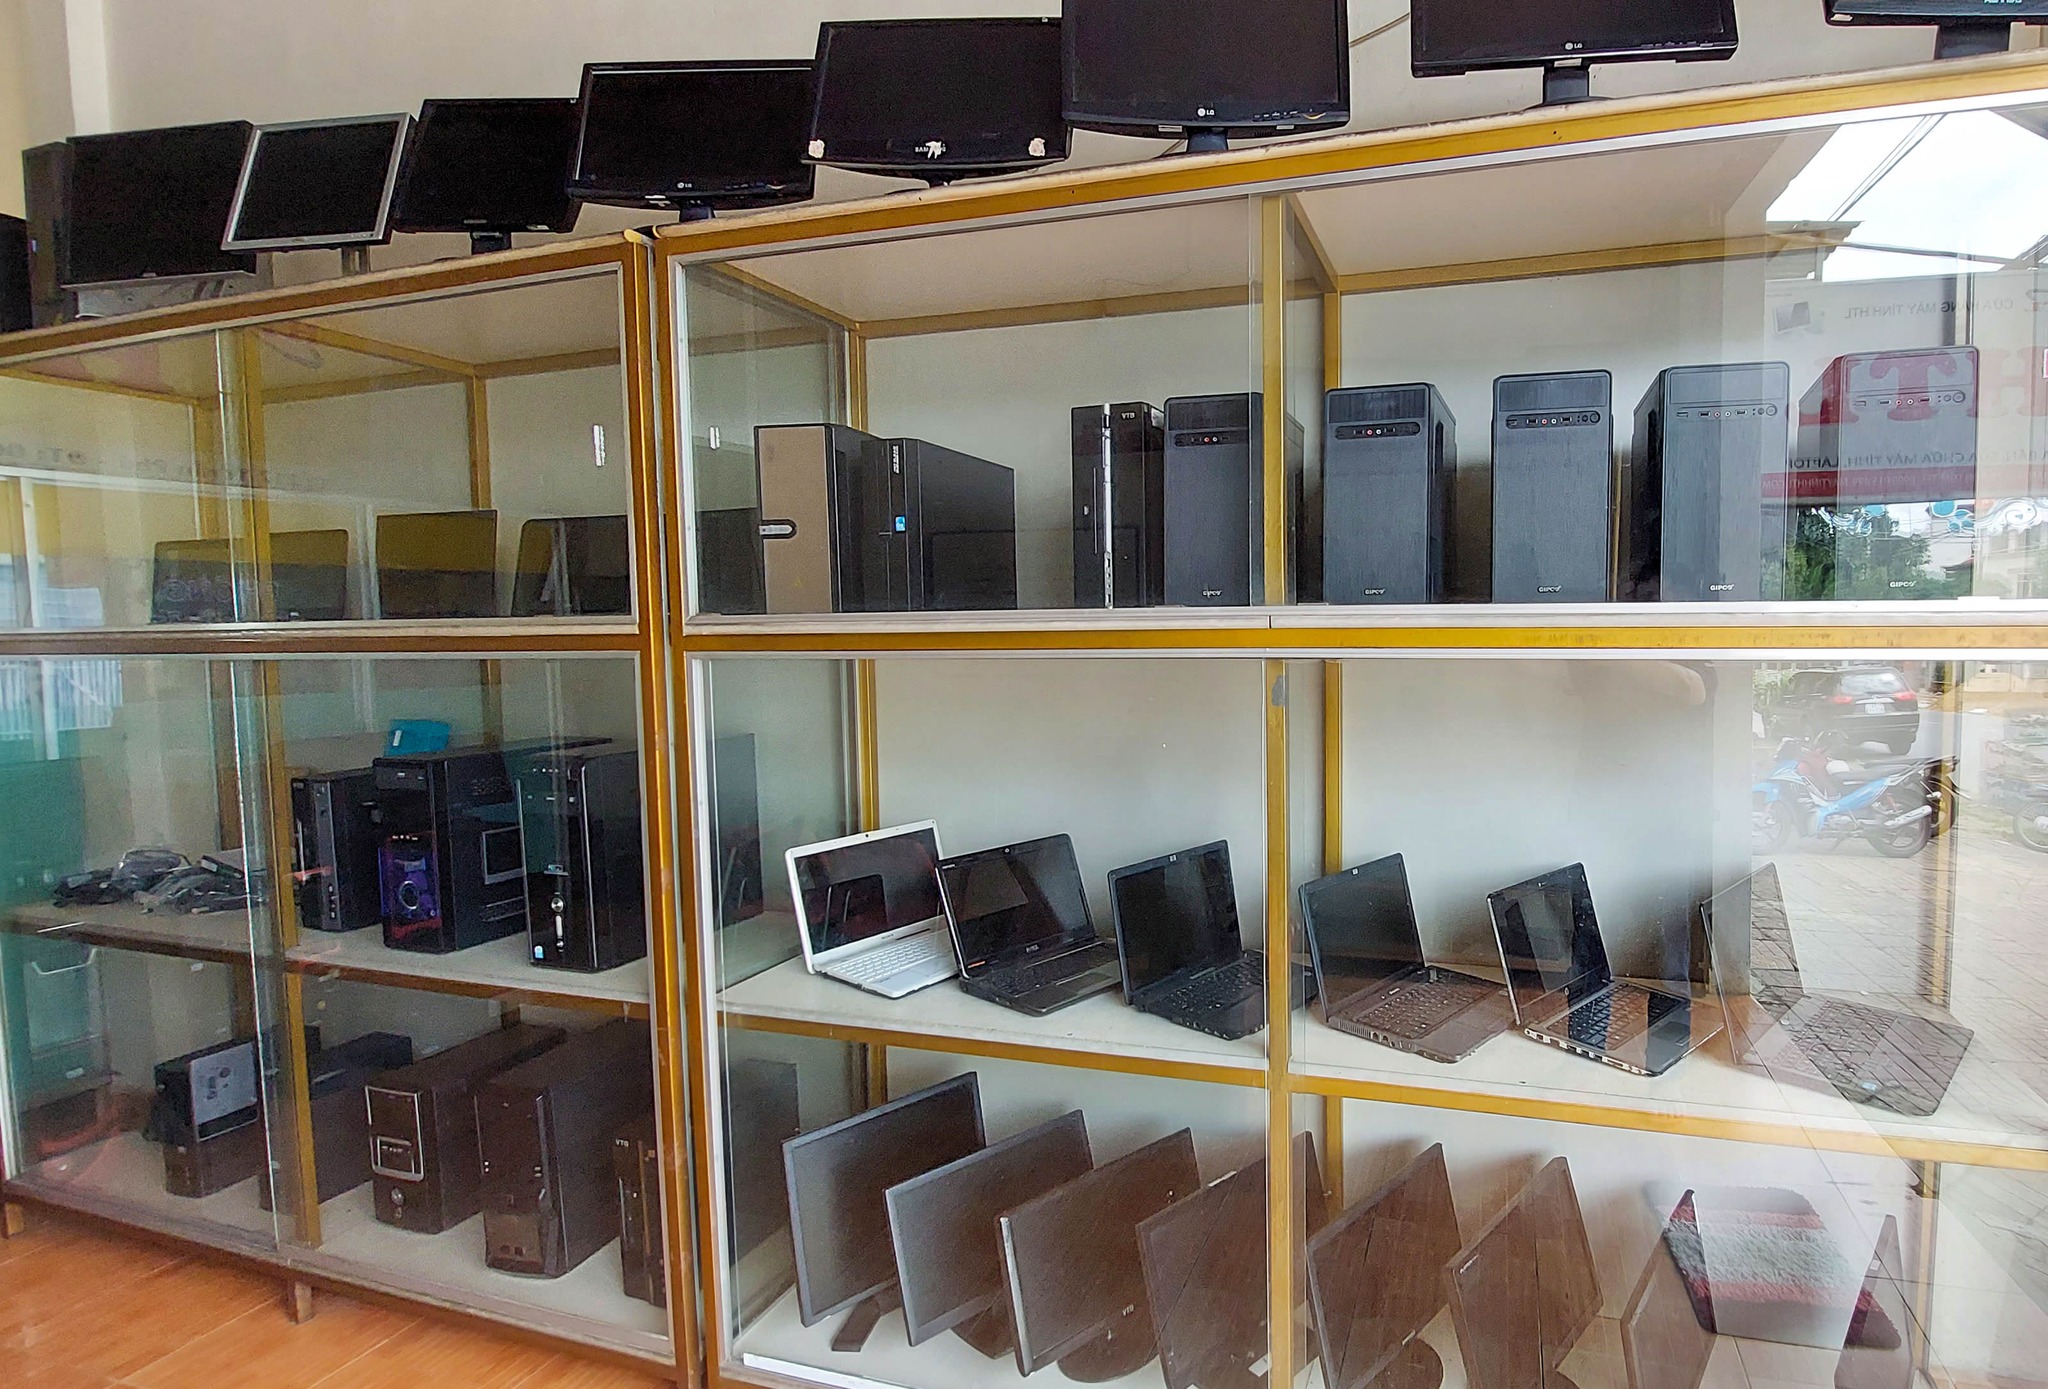 HTL Computer store - Cửa hàng máy tính HTL - Thành phố Kon Tum